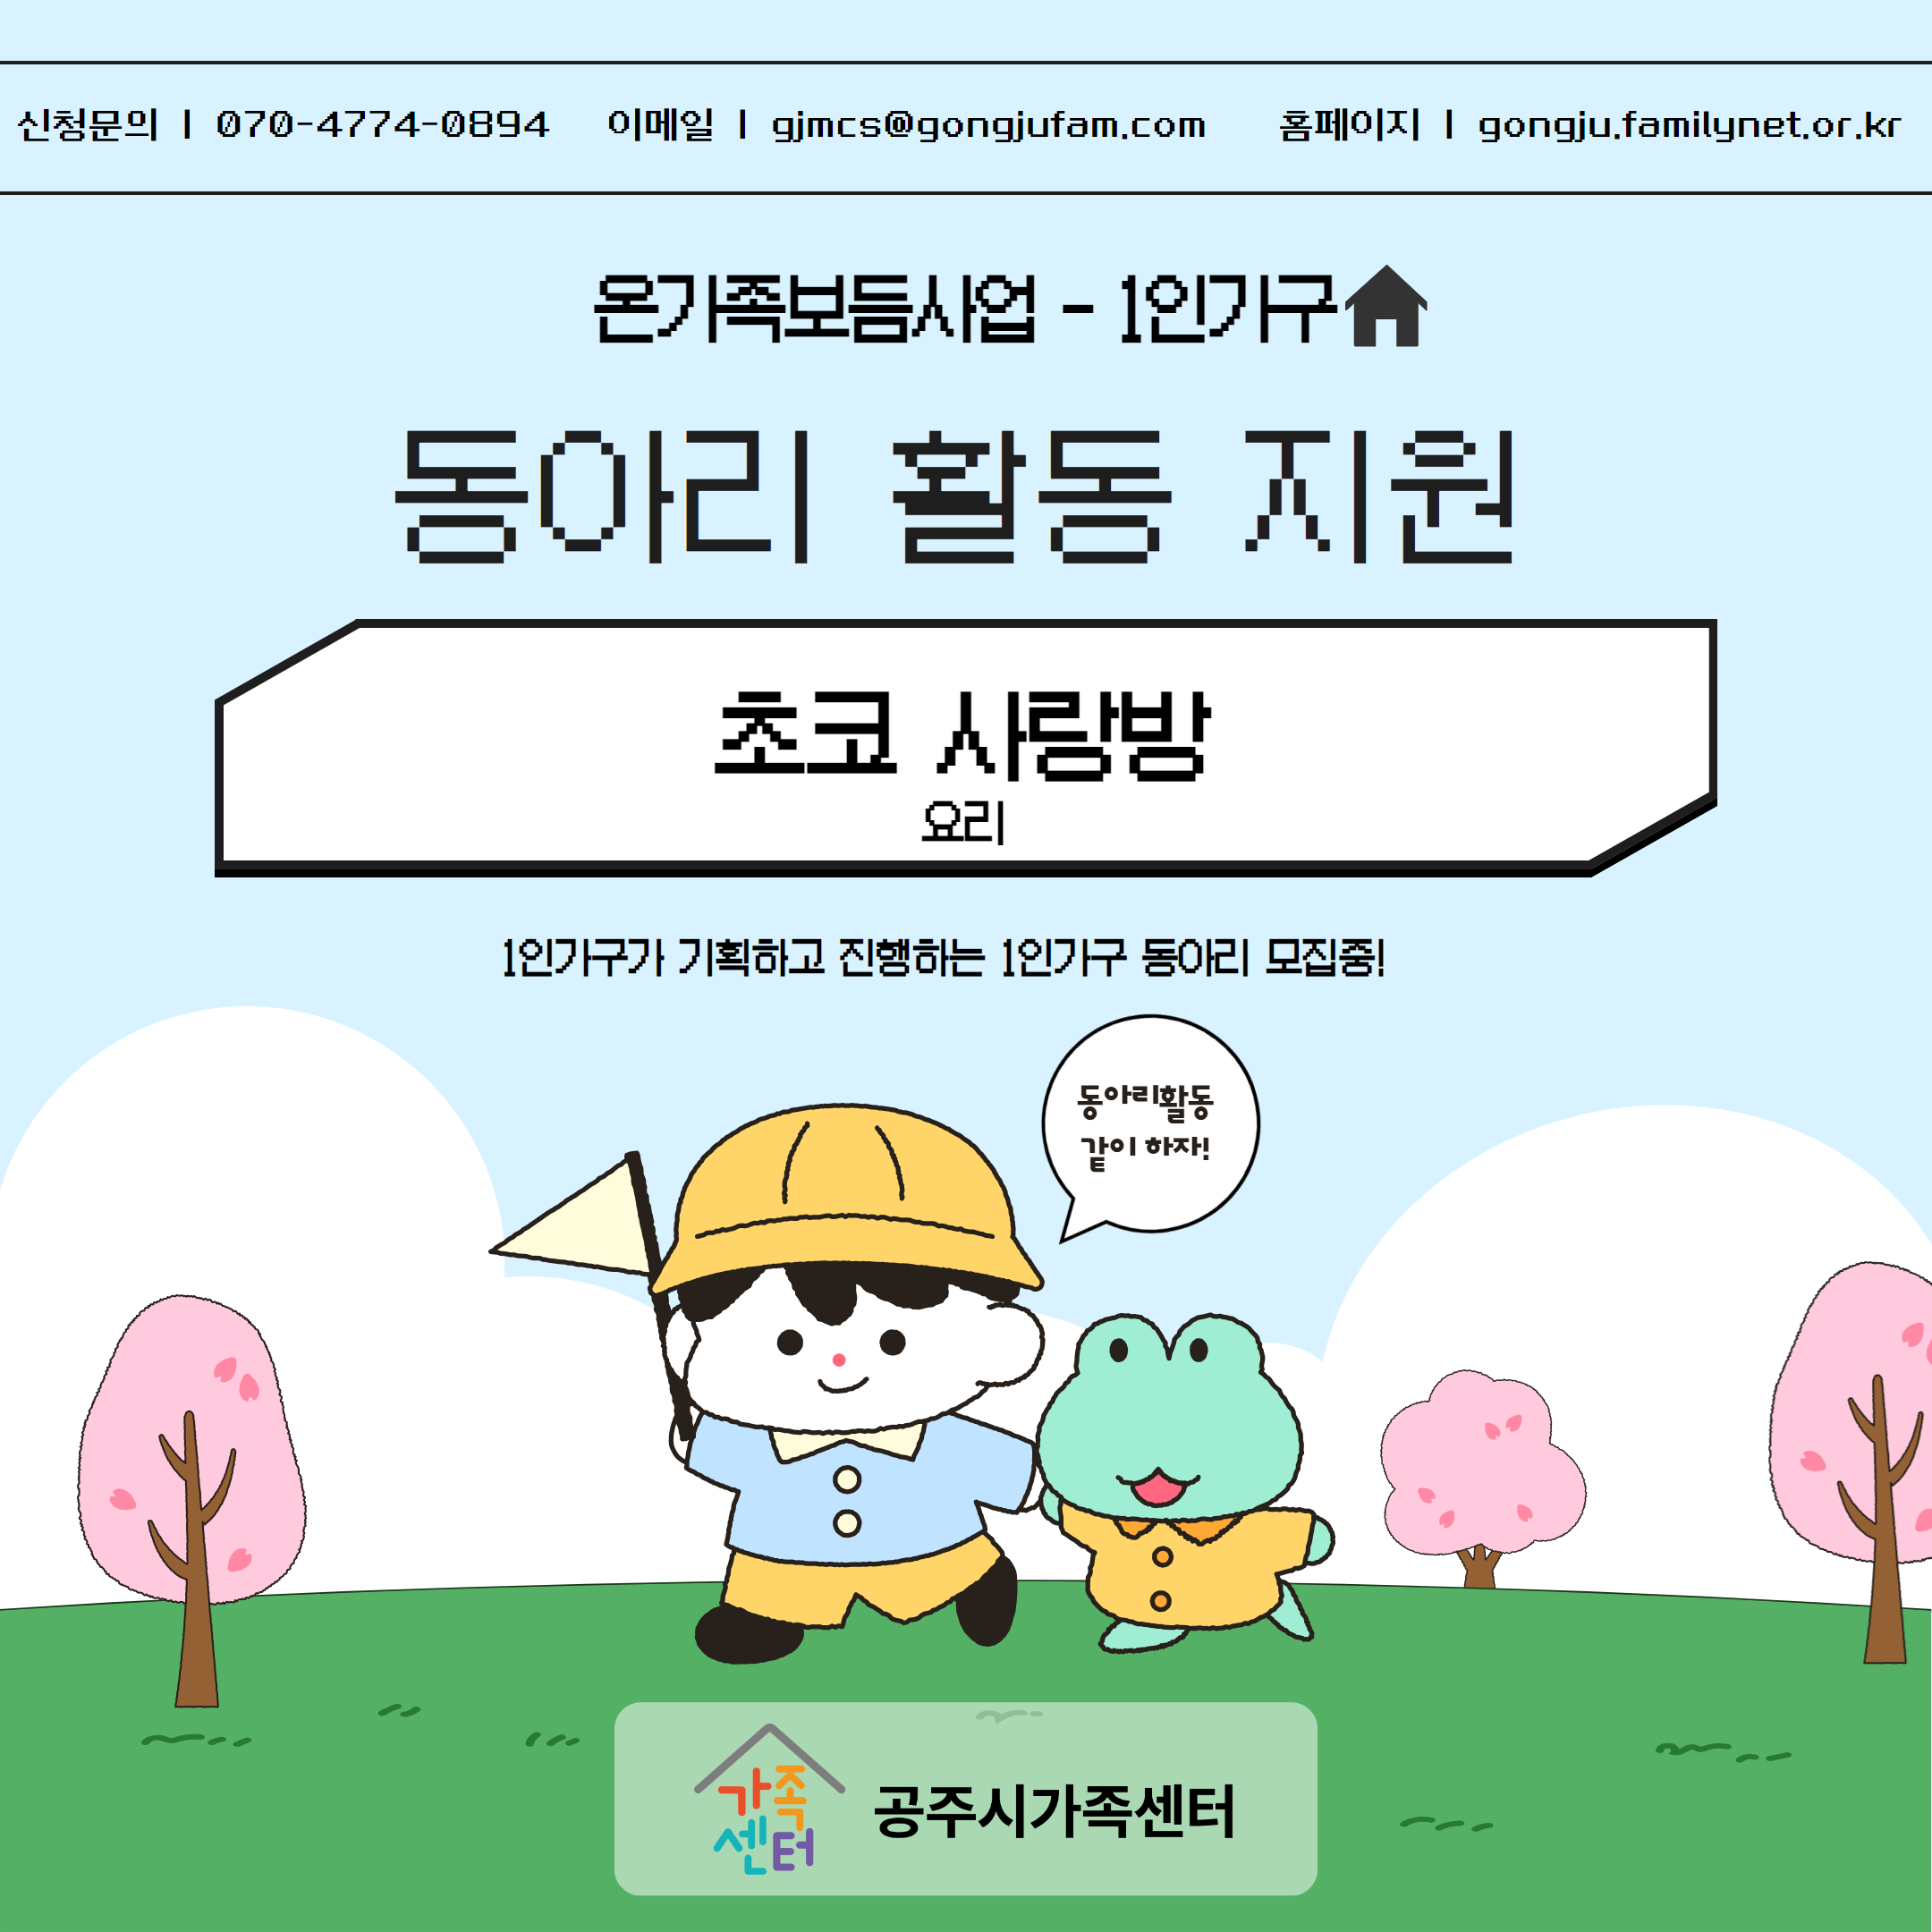 [취약위기]온가족 보듬사업 1인가구 동아리 활동 '초코 사랑방'